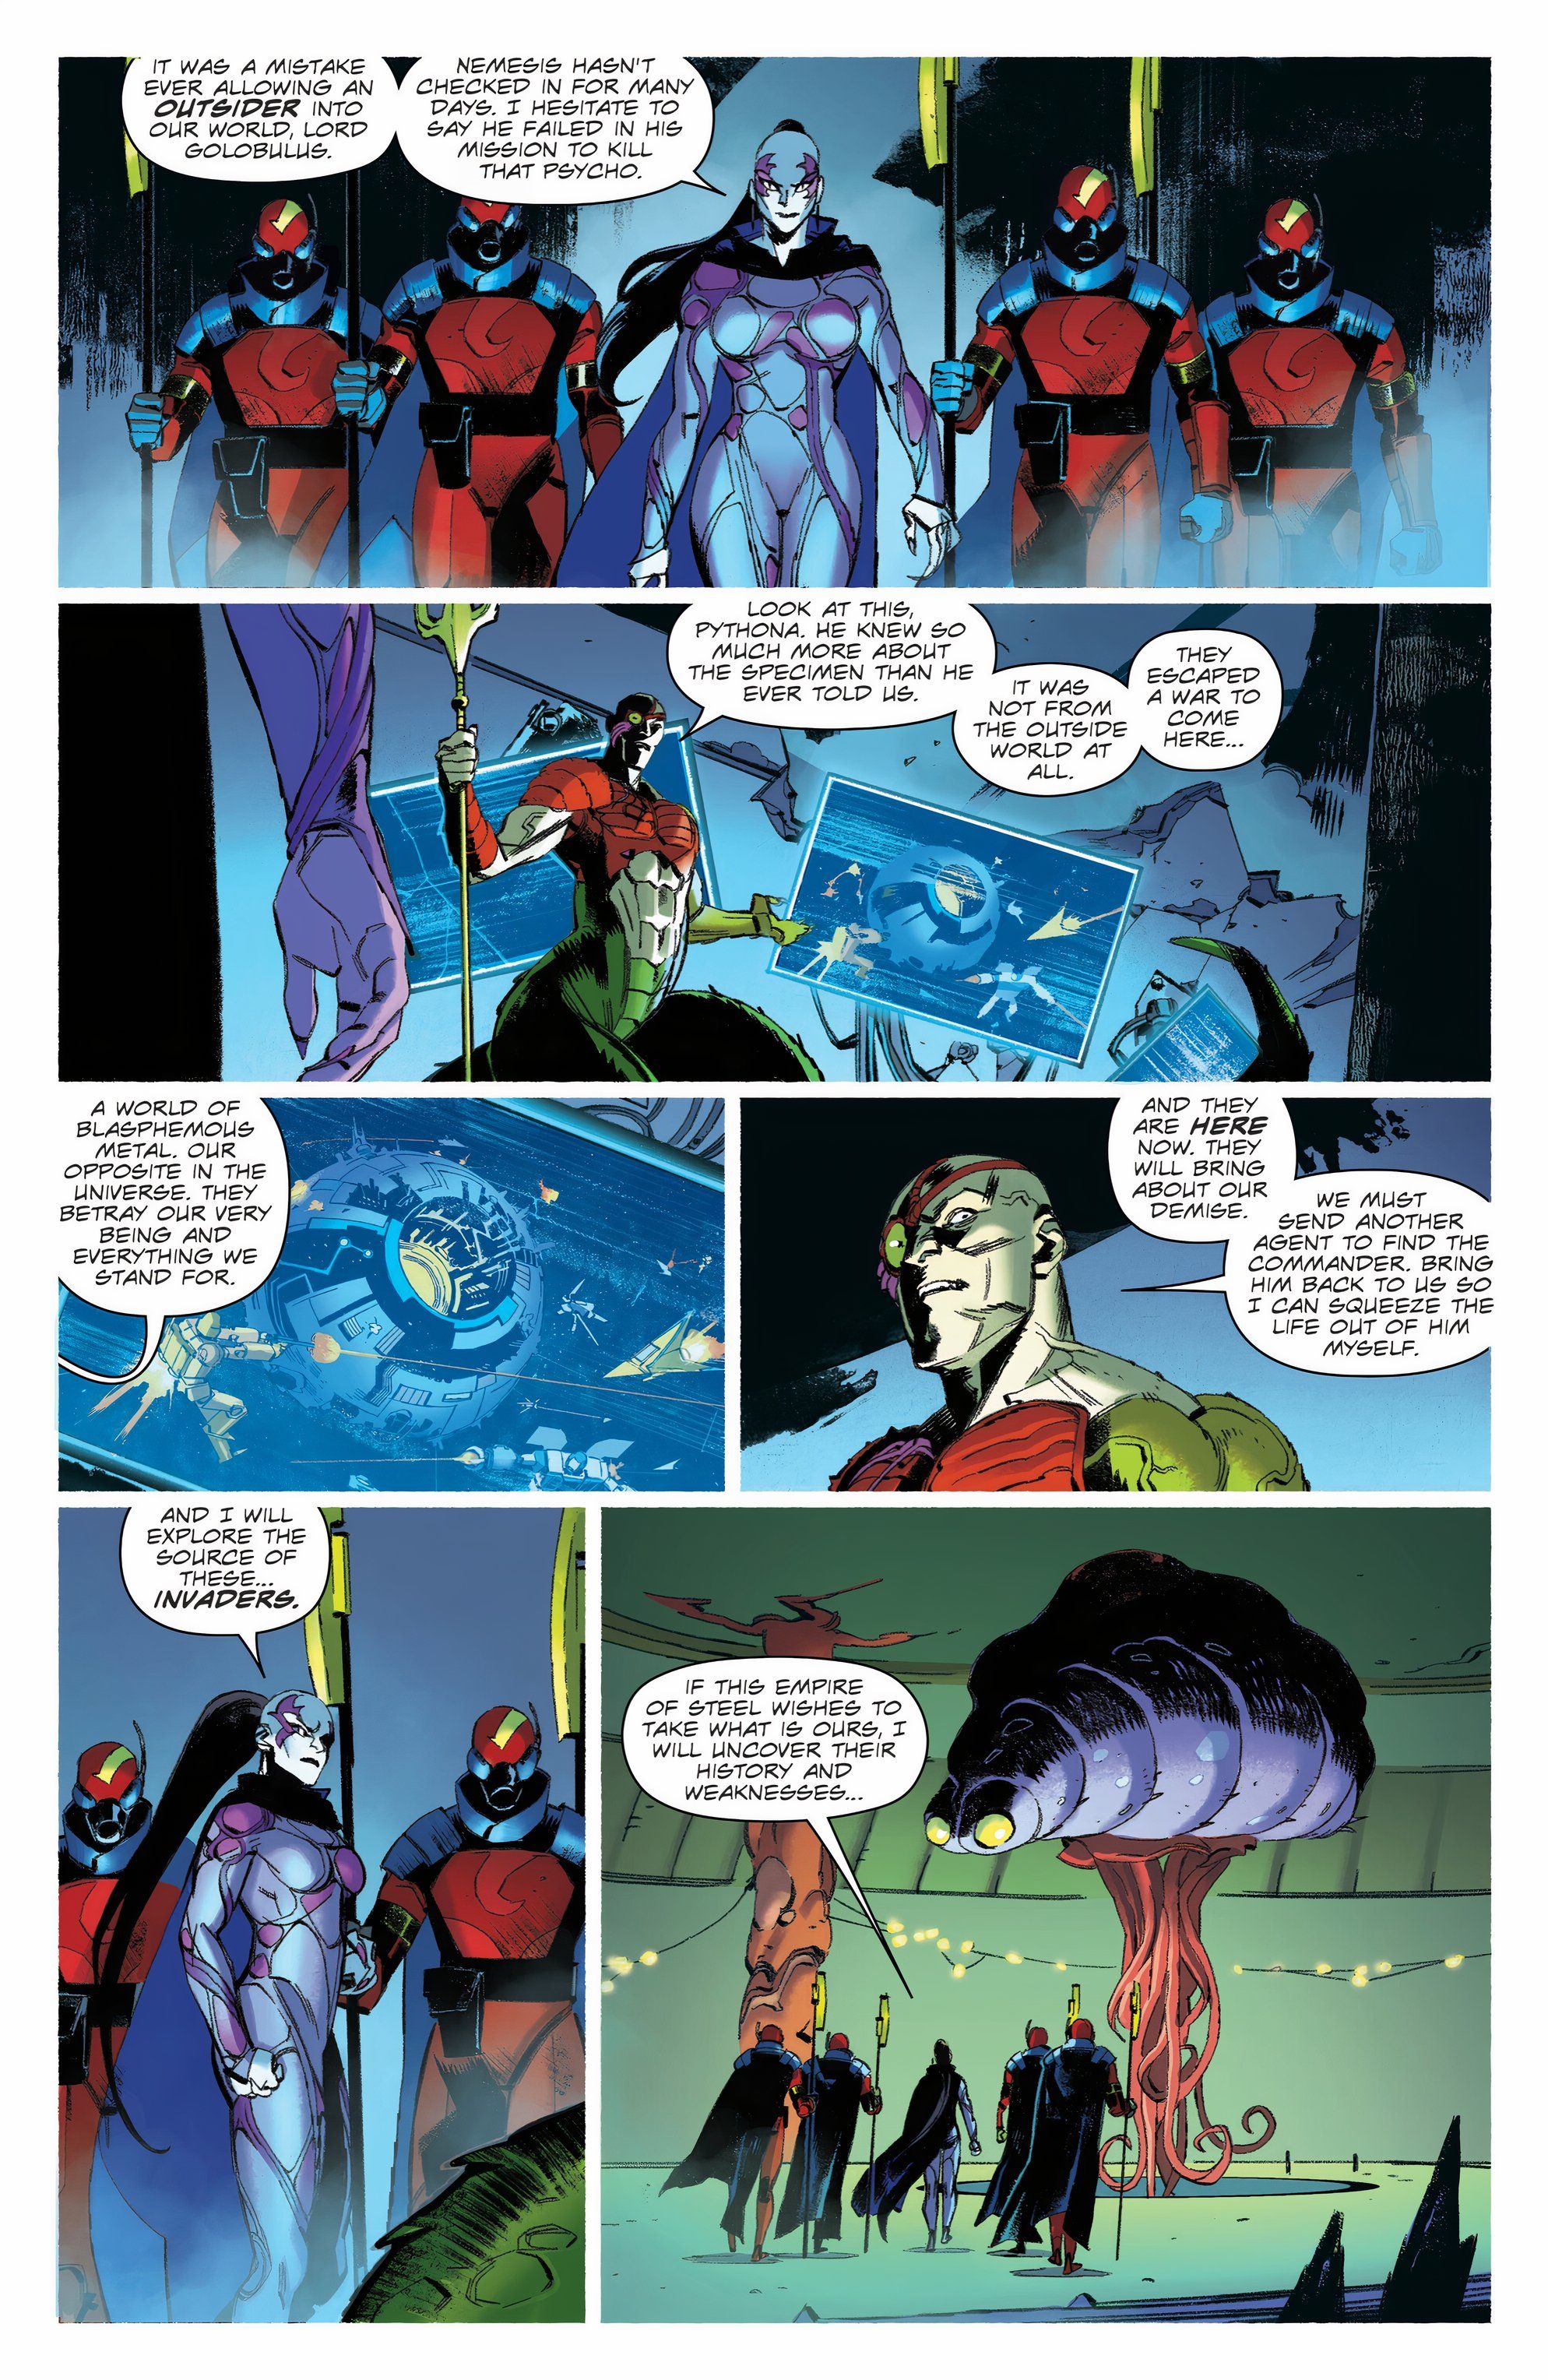 Cobra Commander #5 Golobulus déclare la guerre à Cybertron